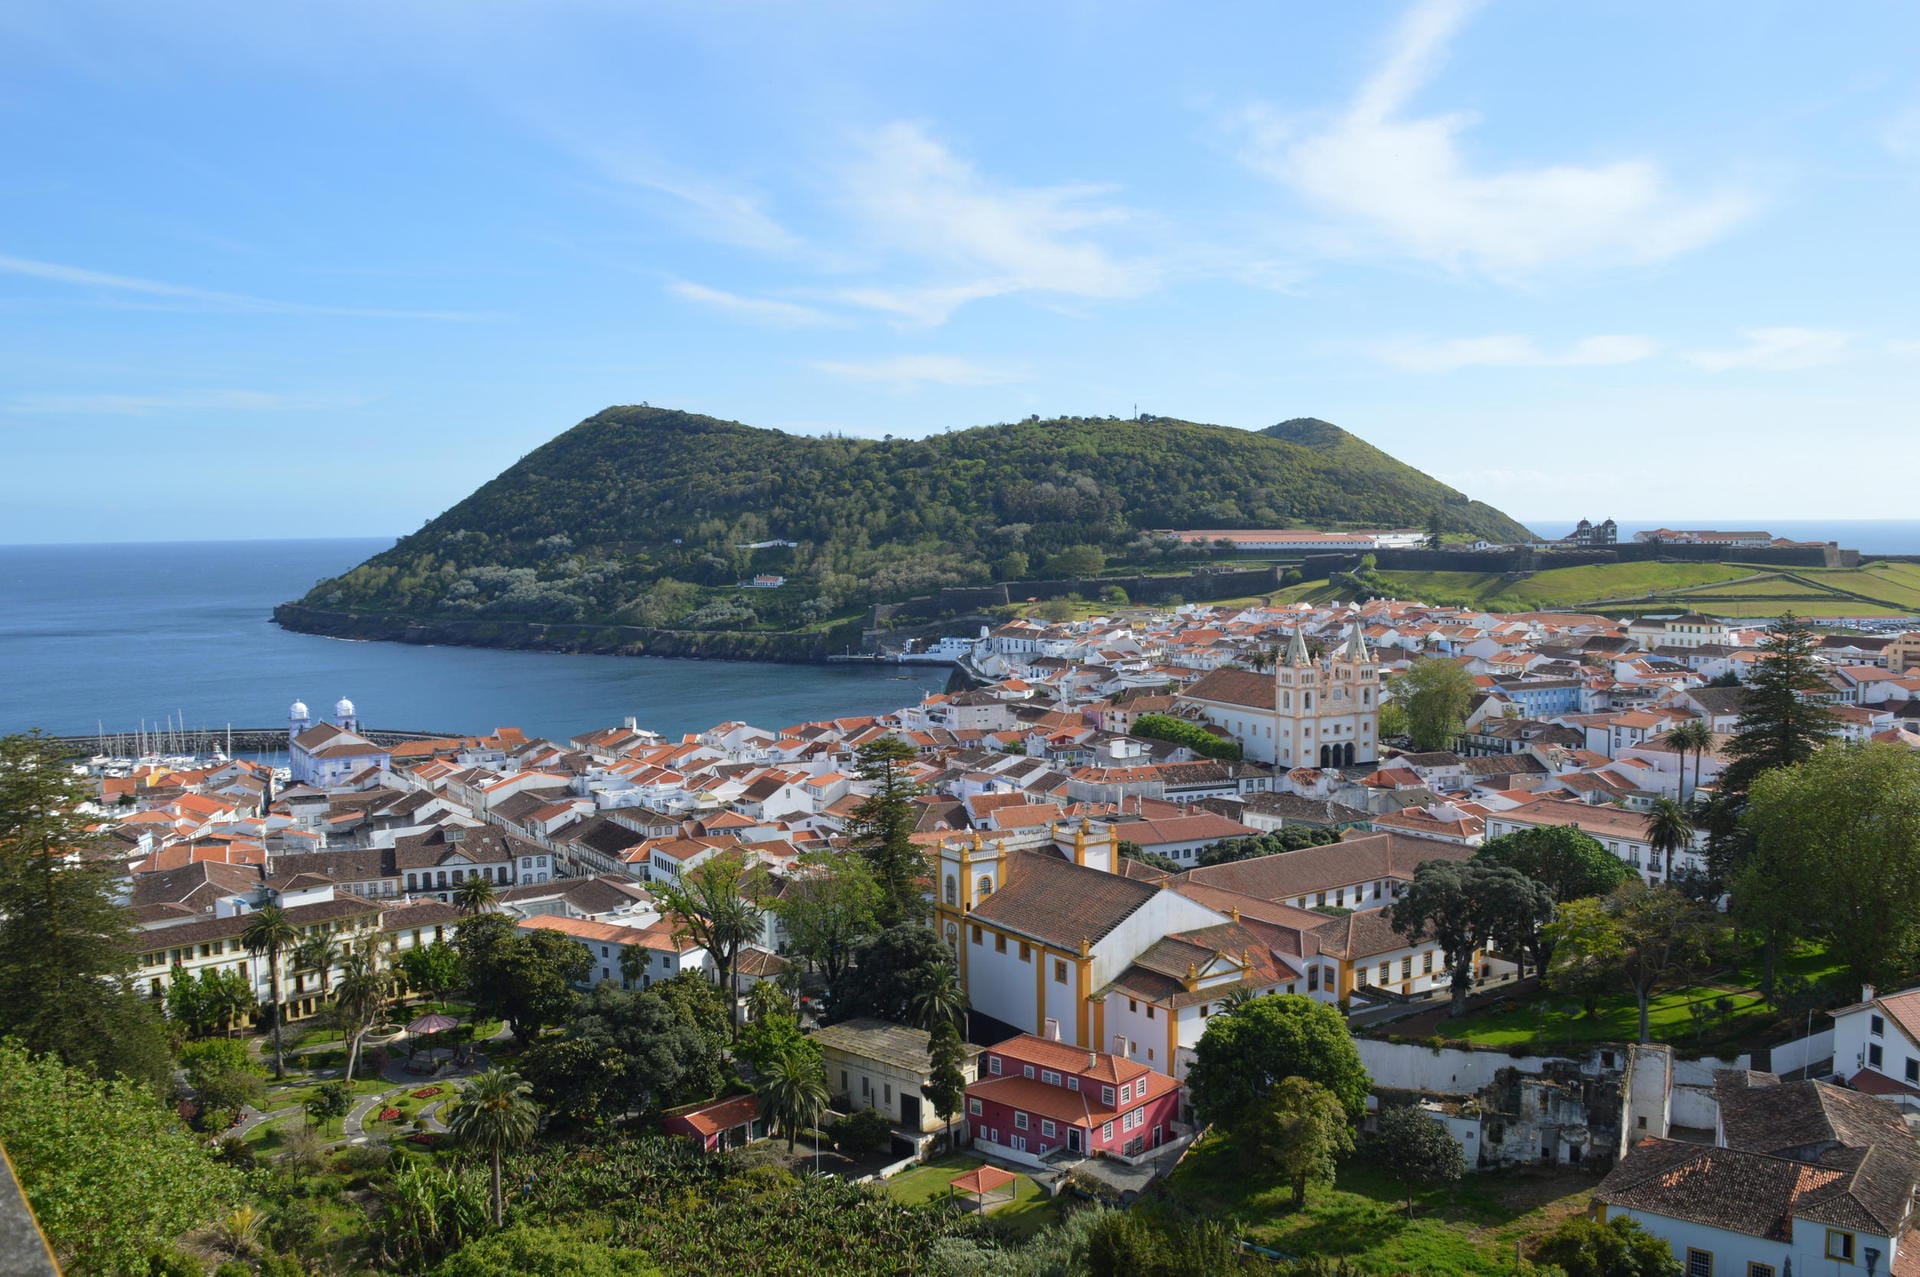 Dies ist ein Blick auf die Hauptstadt Angra do Heroísmo mit Monte Brasil. Sie ist ein Weltkulturerbe.